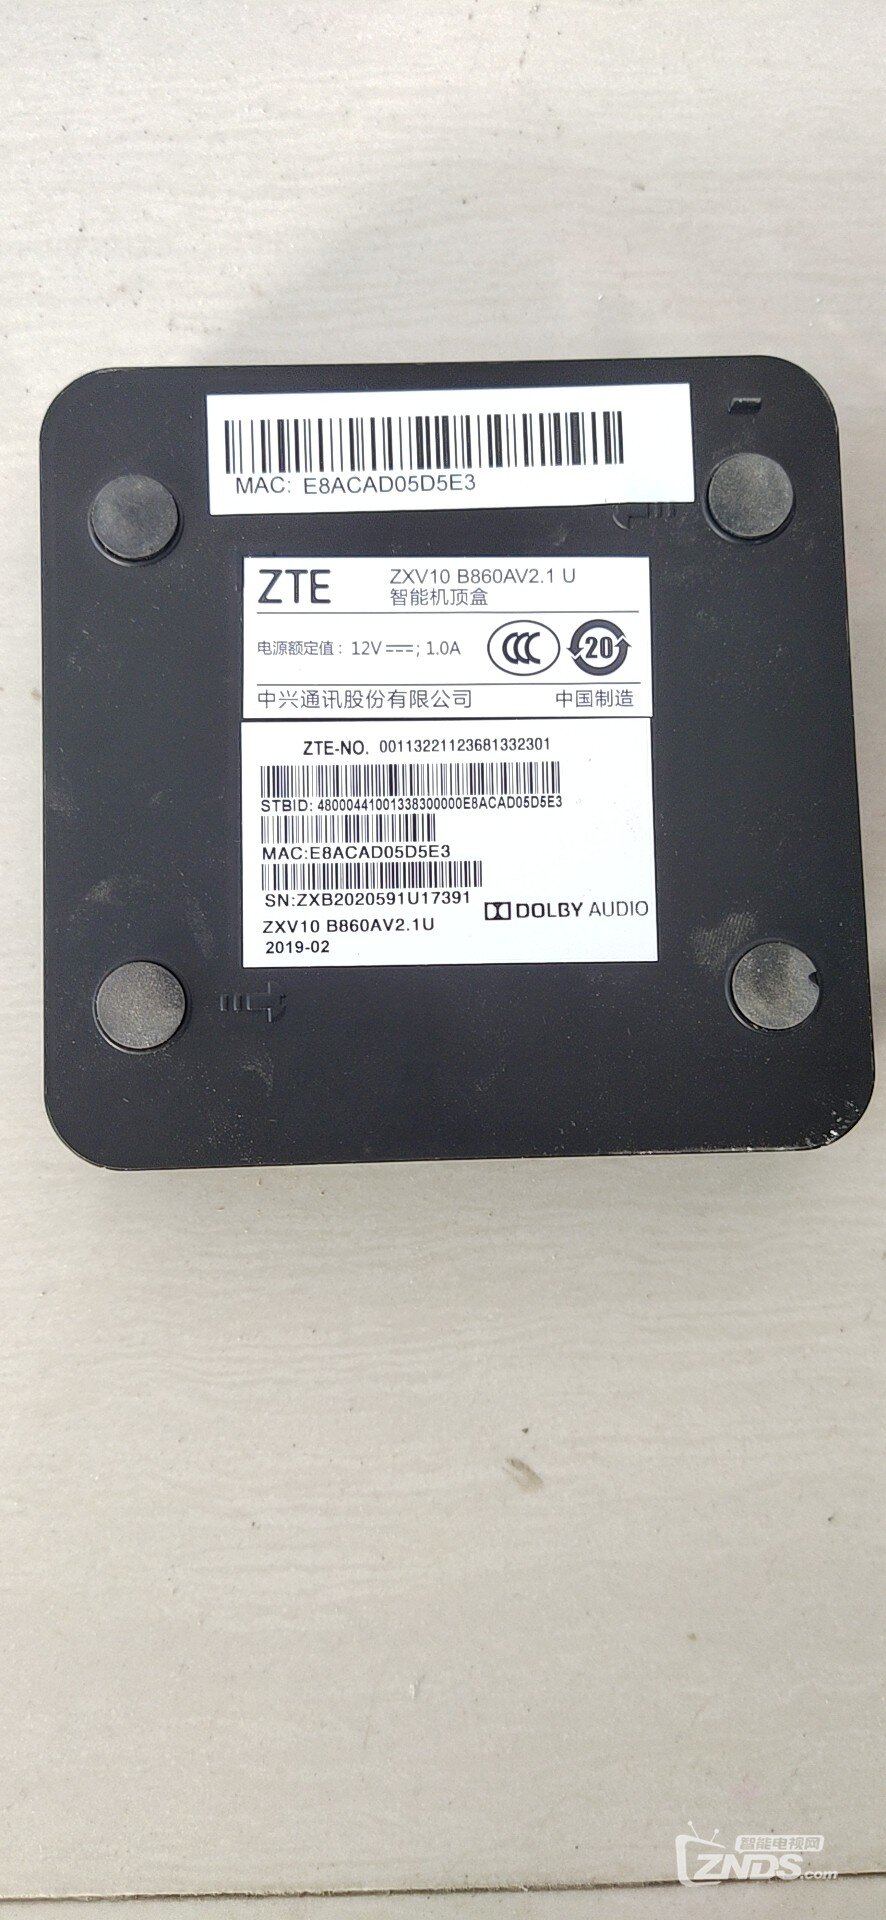 ZTE ZXV10 B860AV2.1U河南商丘联通的怎么刷第三方固件_中兴机顶盒_ZNDS